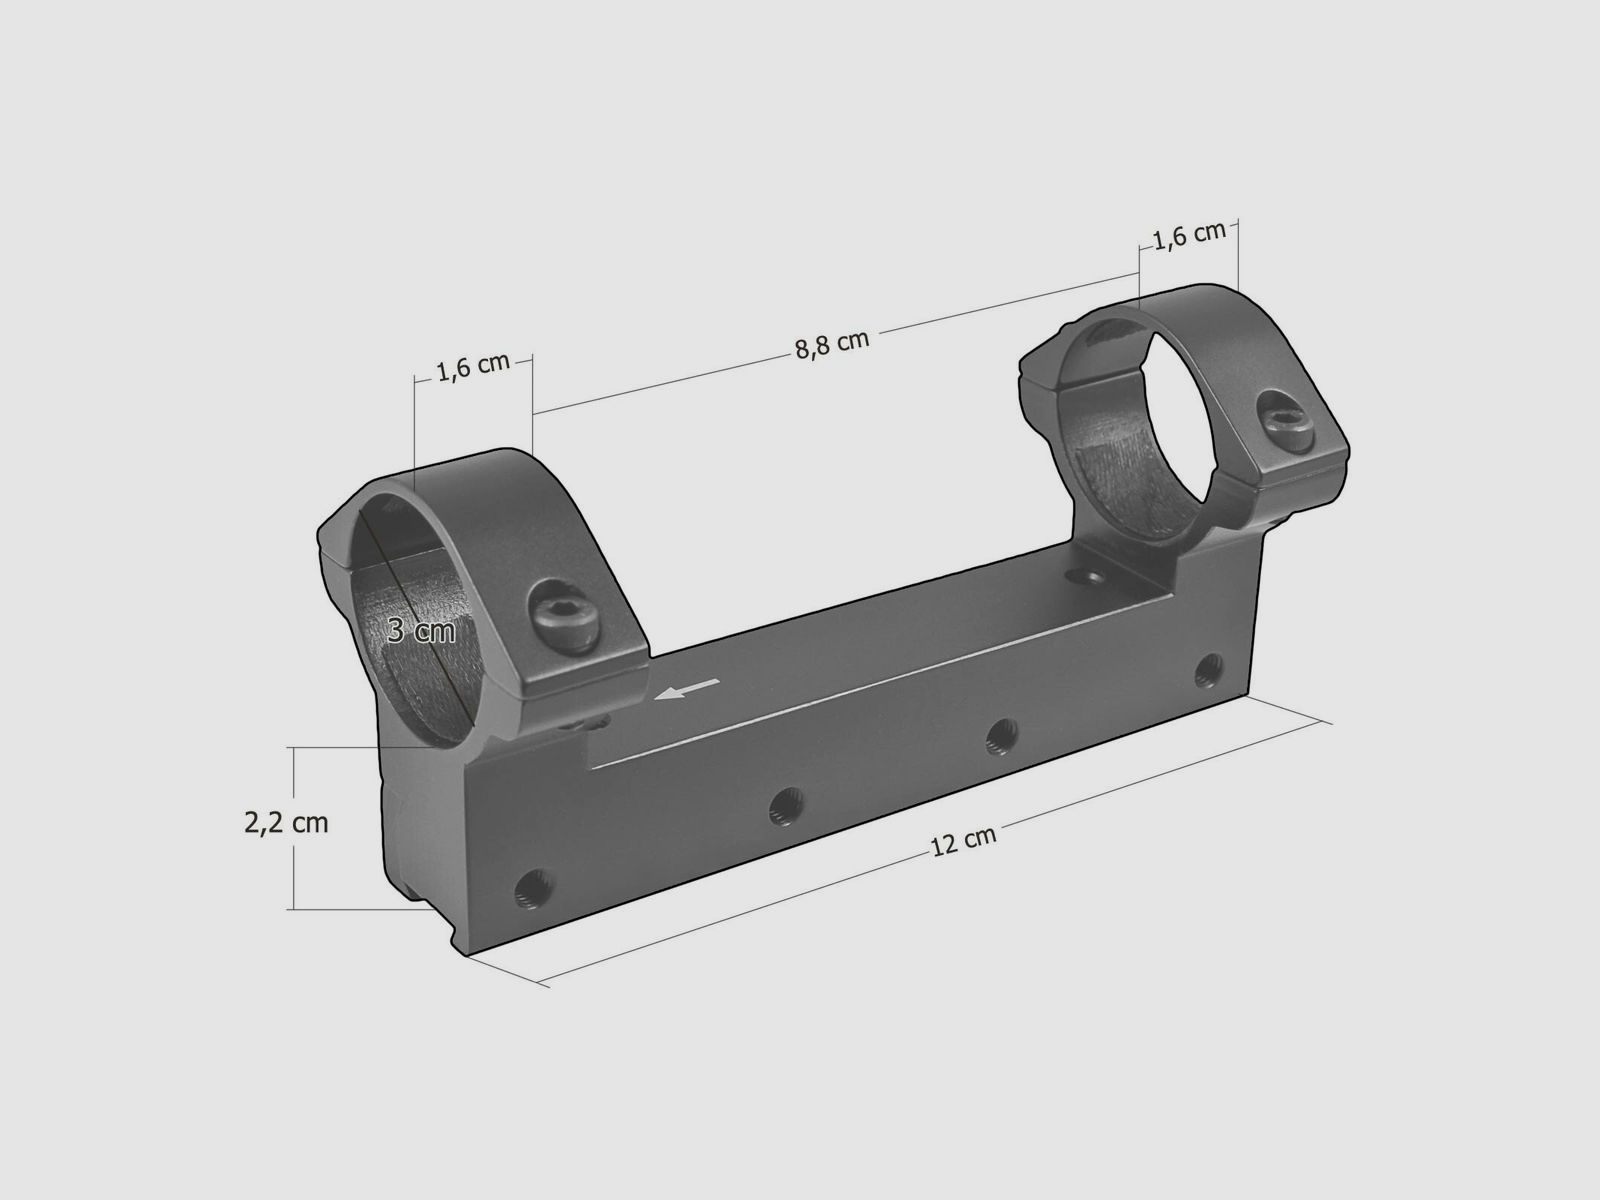 Walther Lock Down einteilige Montageschiene ø 30 mm - für 11 mm Prismenschiene